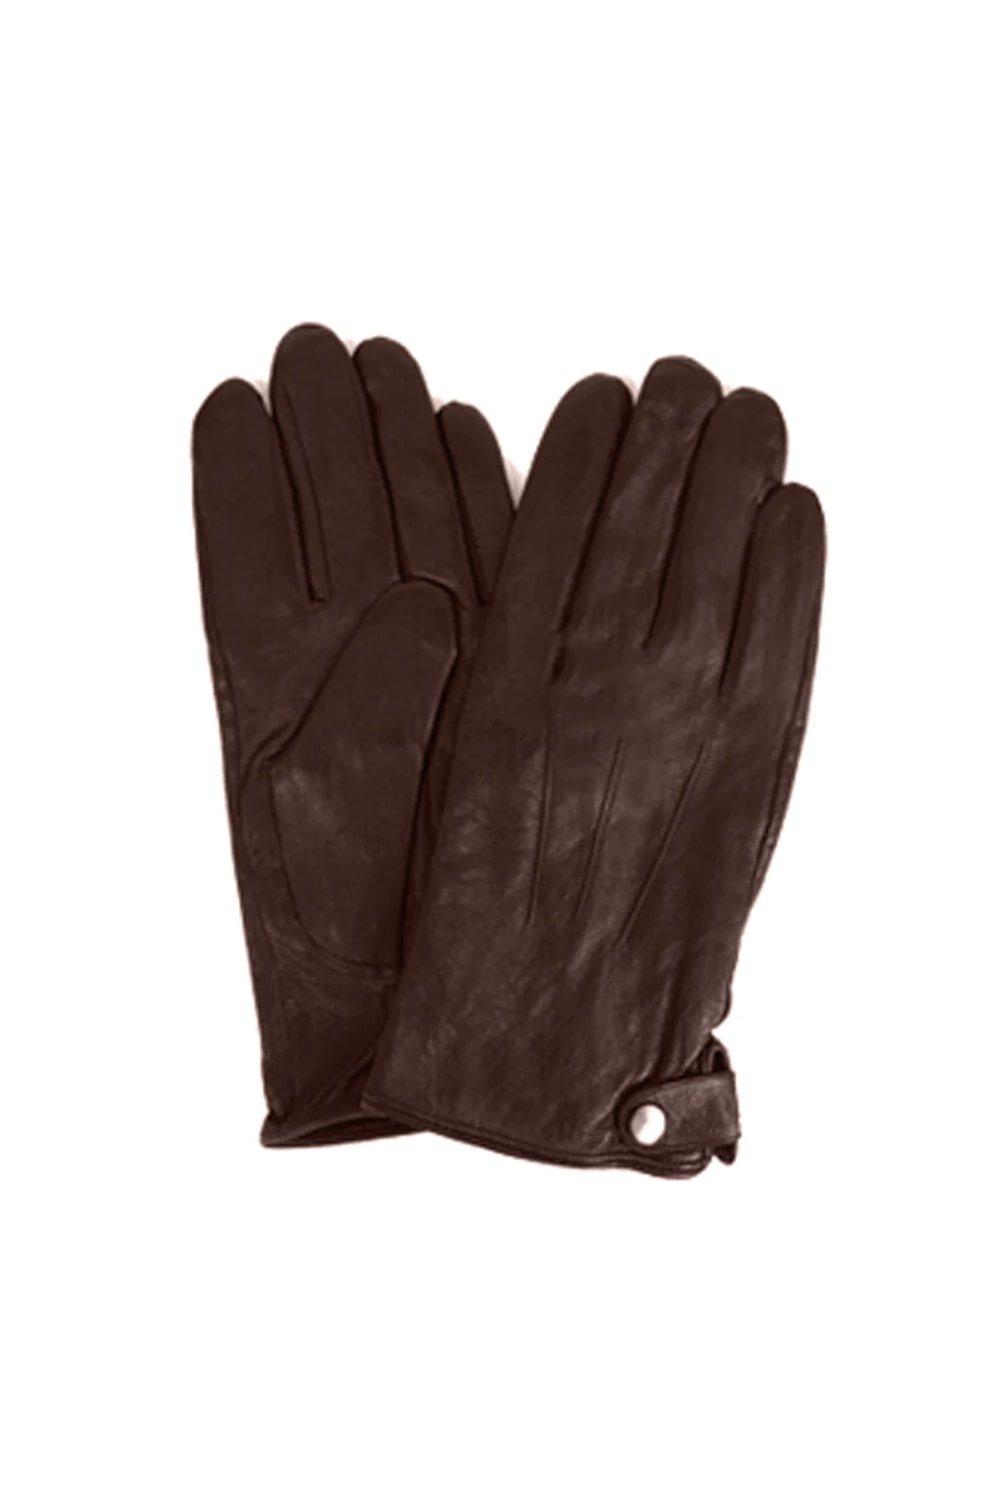 Классические кожаные зимние перчатки Eastern Counties Leather, коричневый цена и фото